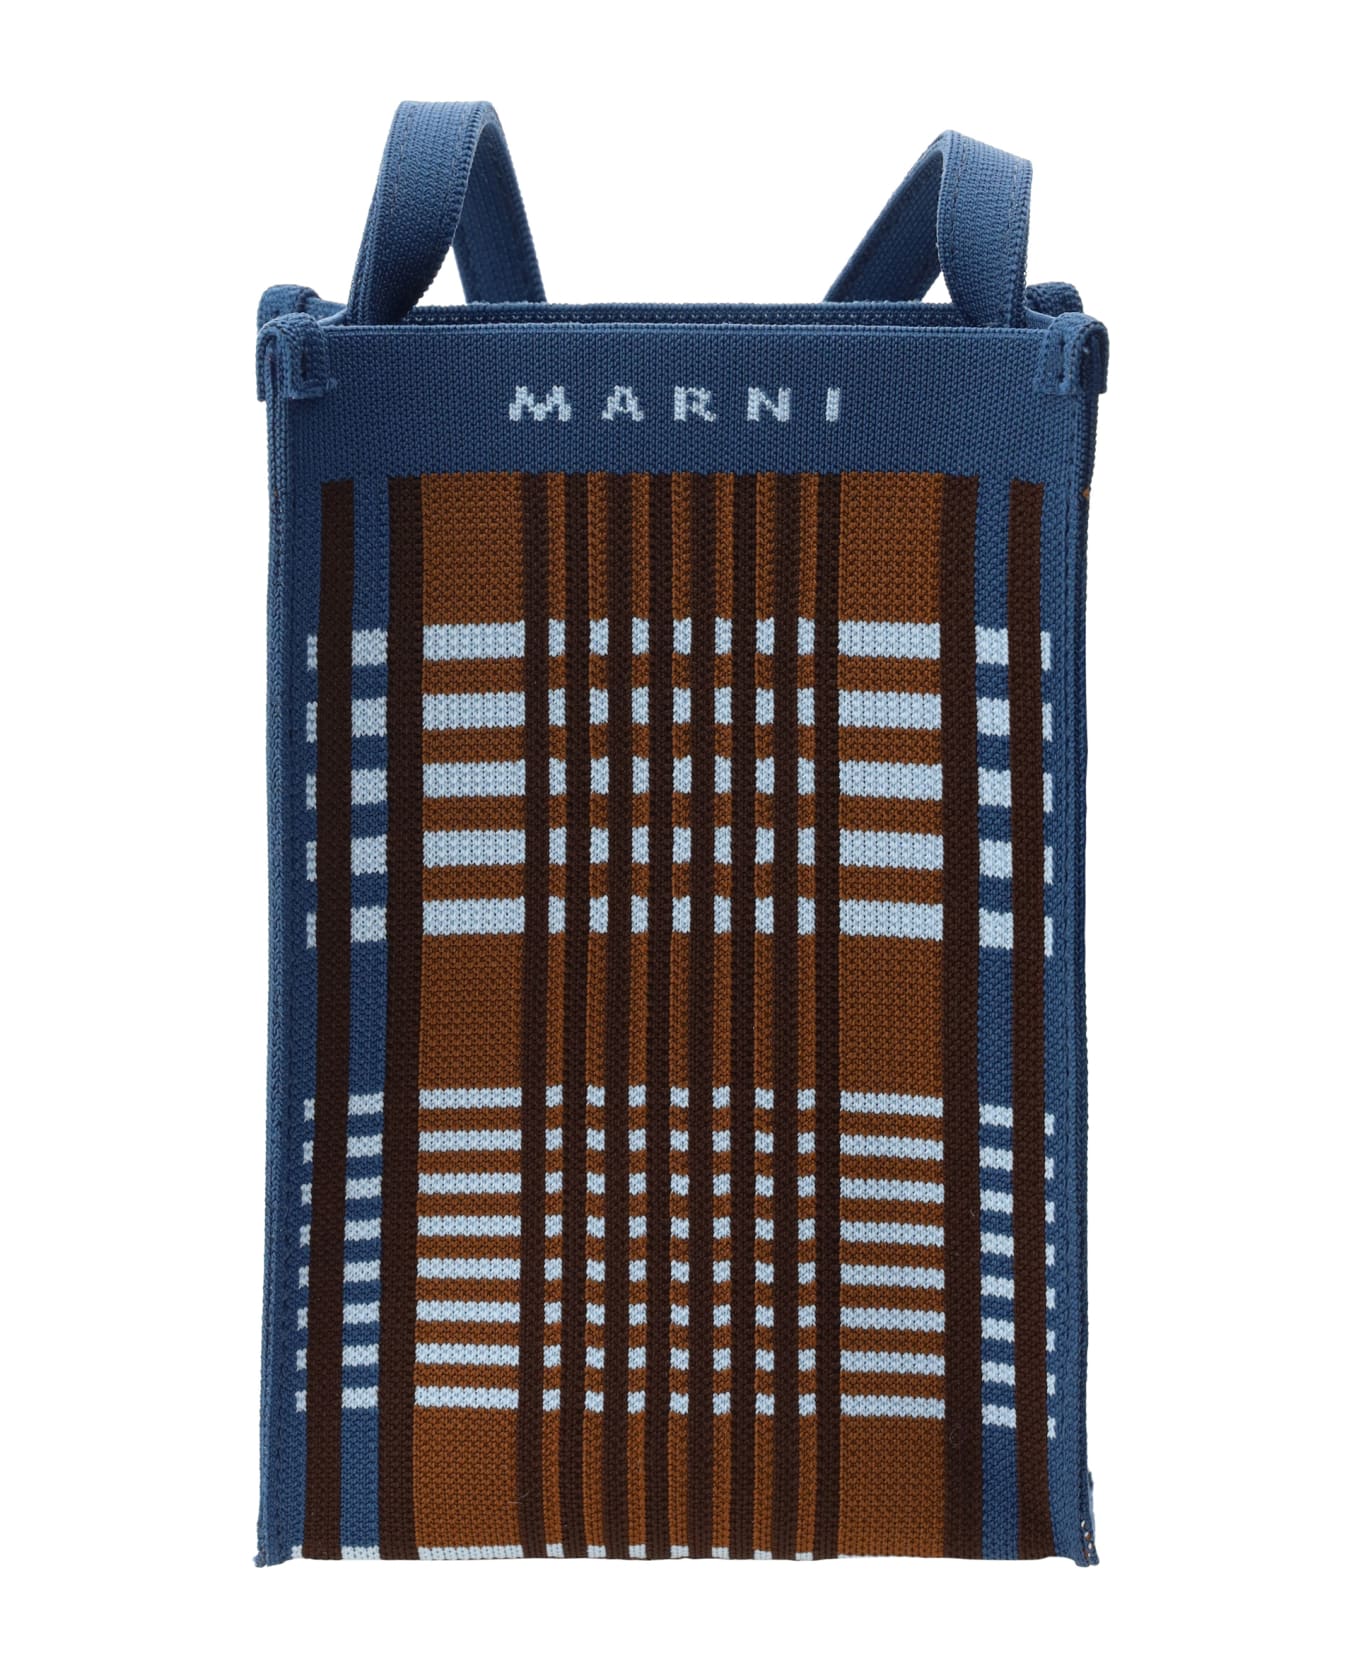 Marni Shoulder Bag - Light Blue/rust